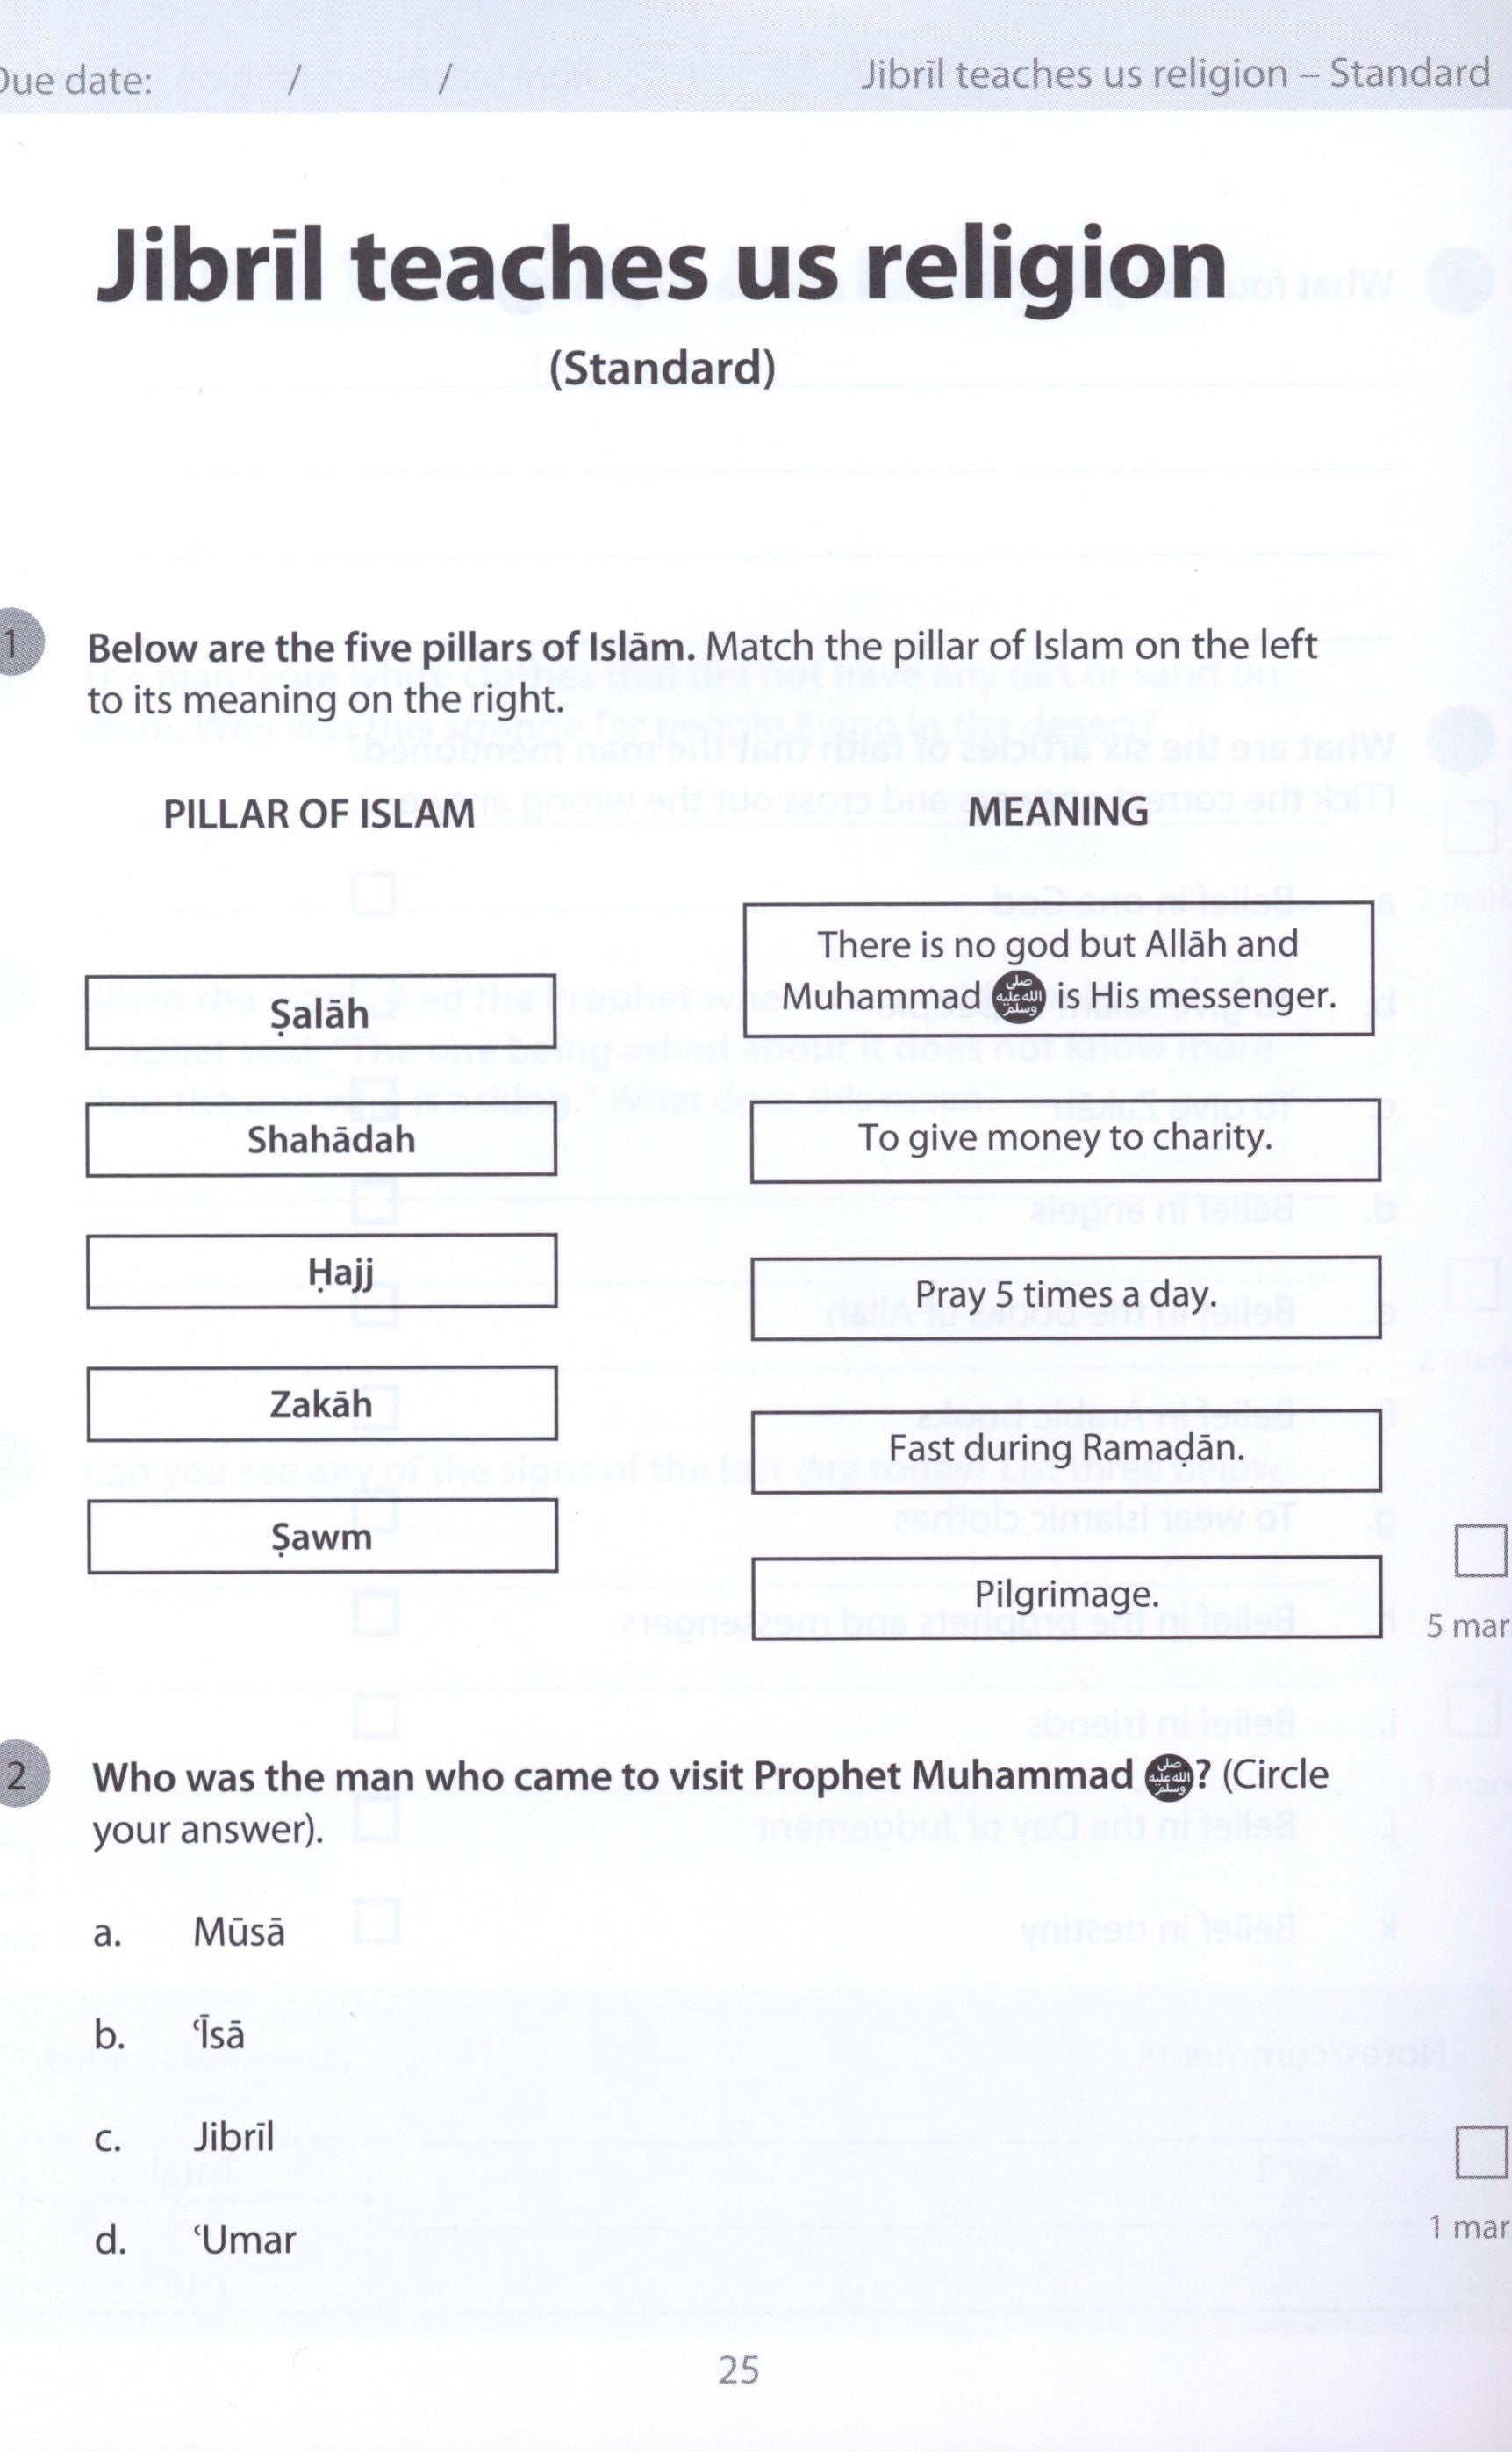 Safar Islamic Studies Workbook 2